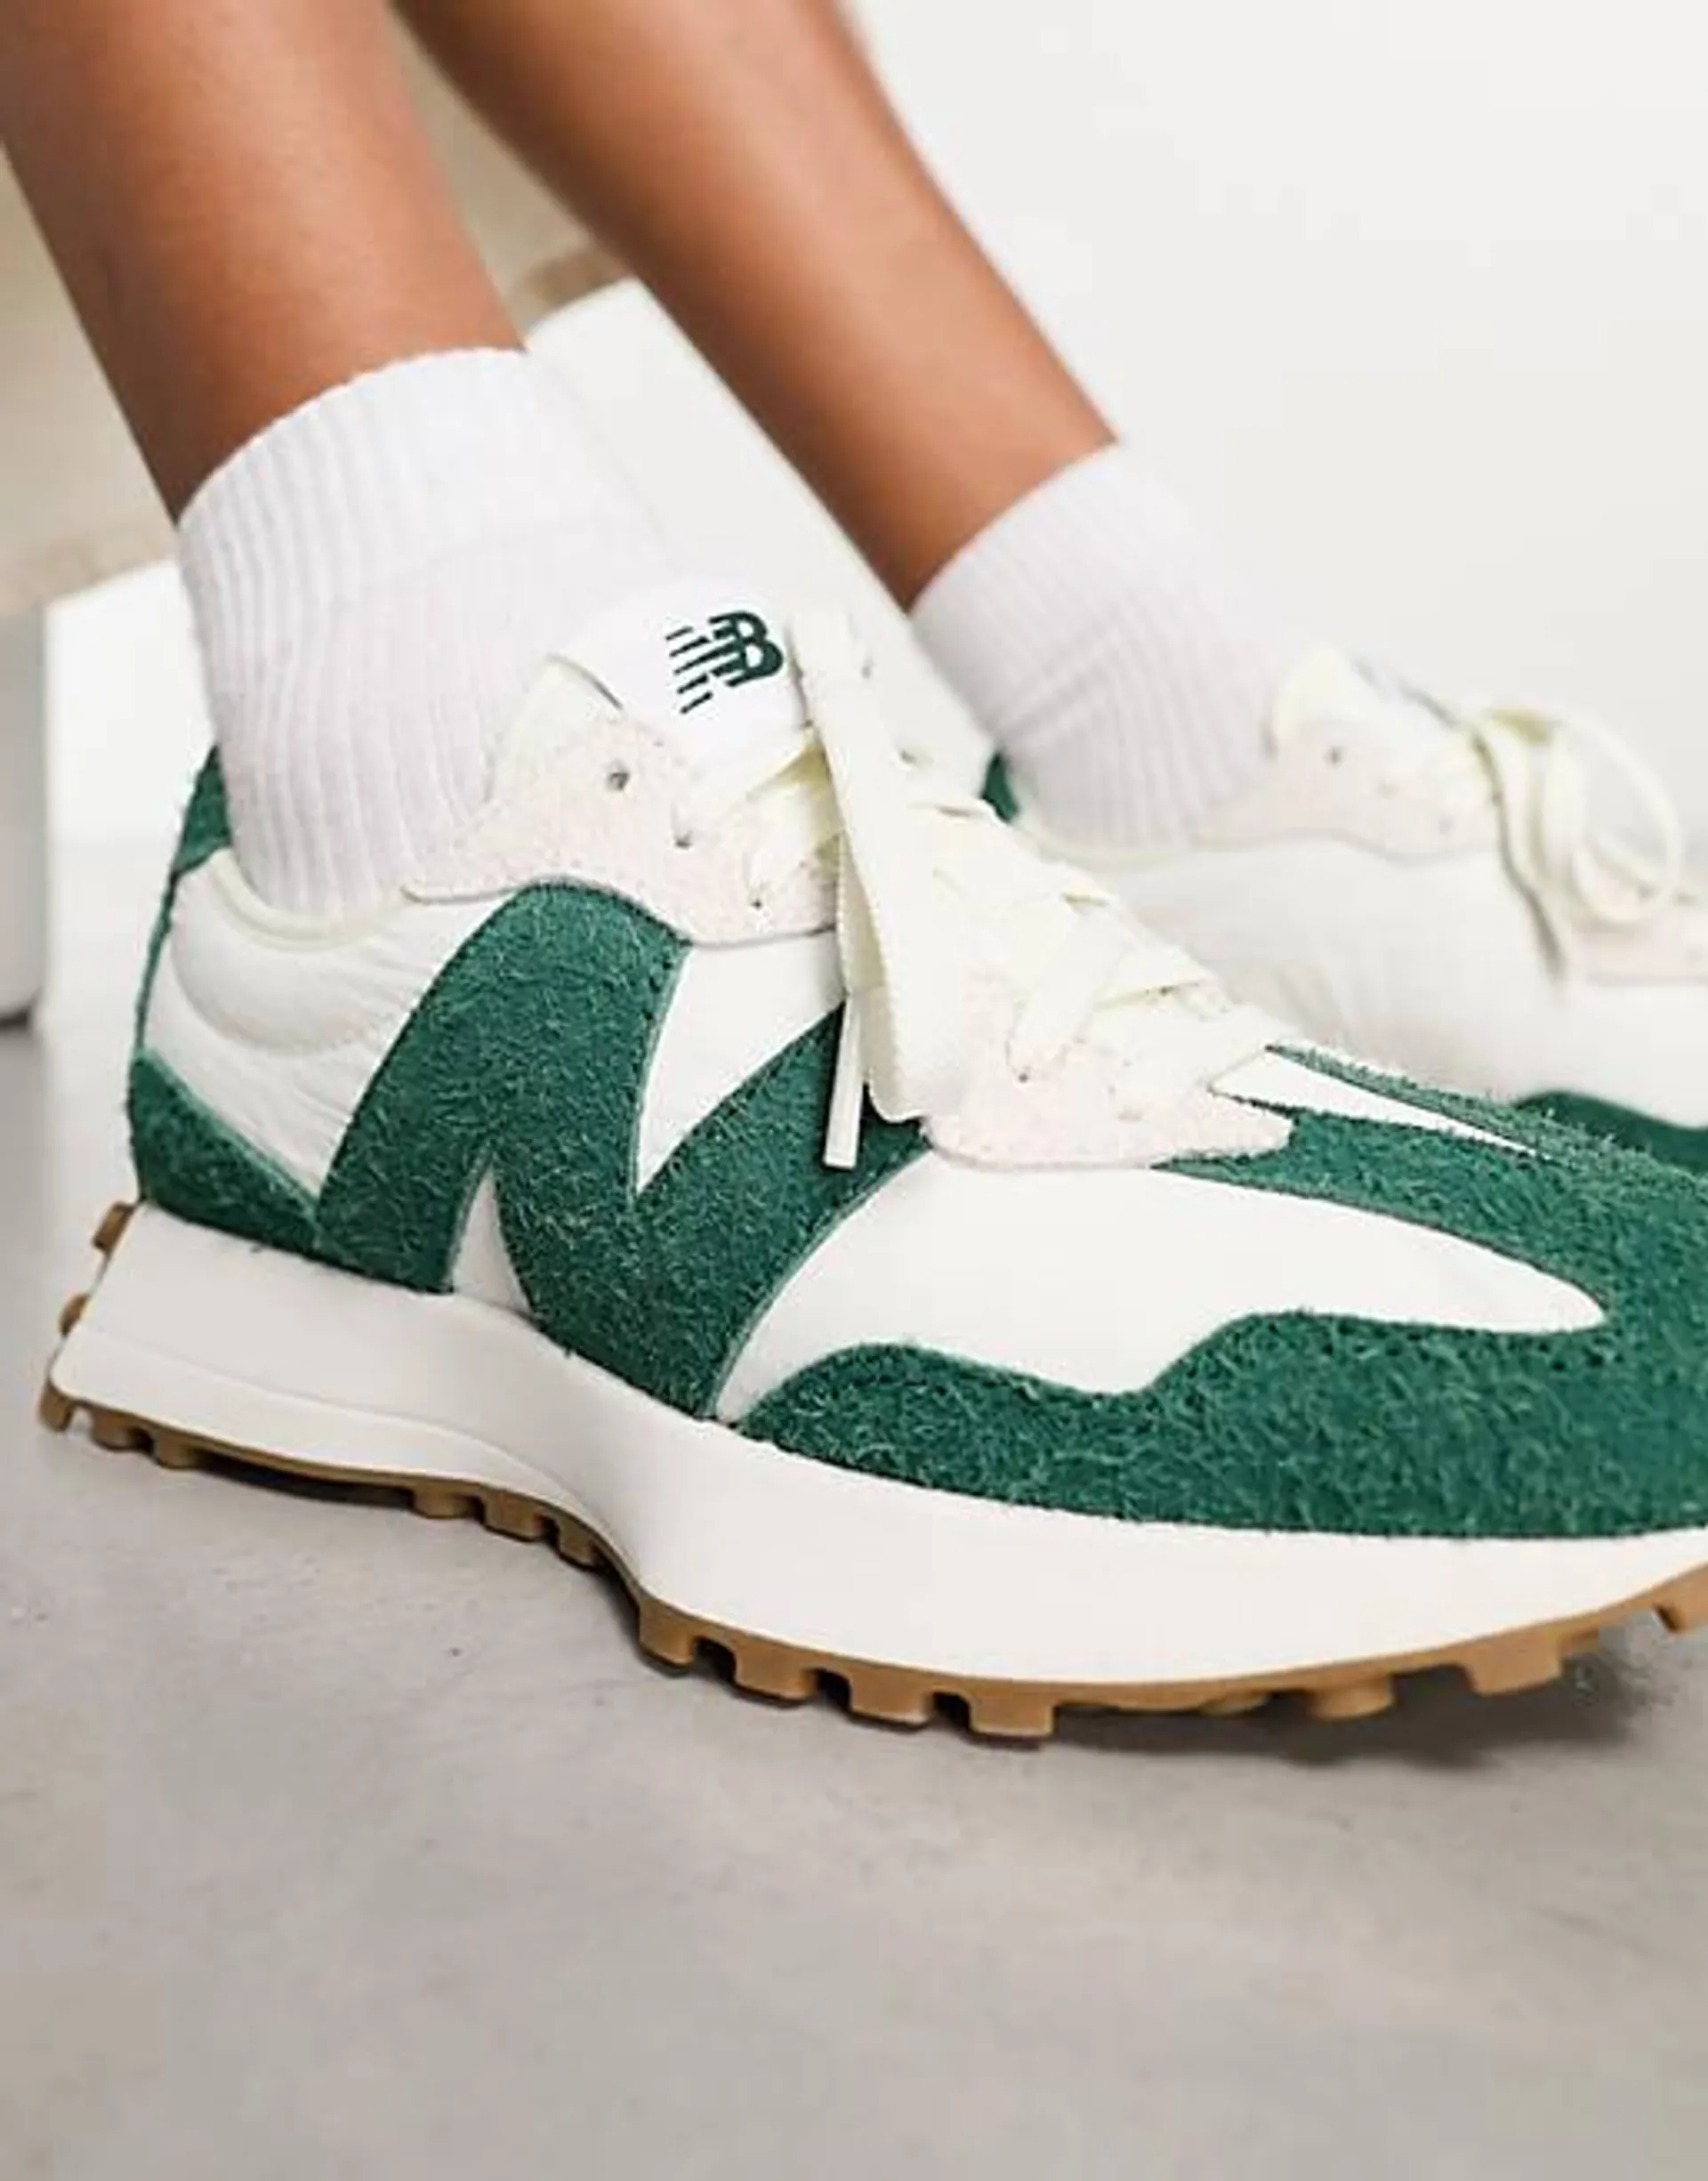 In esclusiva per ASOS - New Balance - 327 - Sneakers bianche e verde pastello